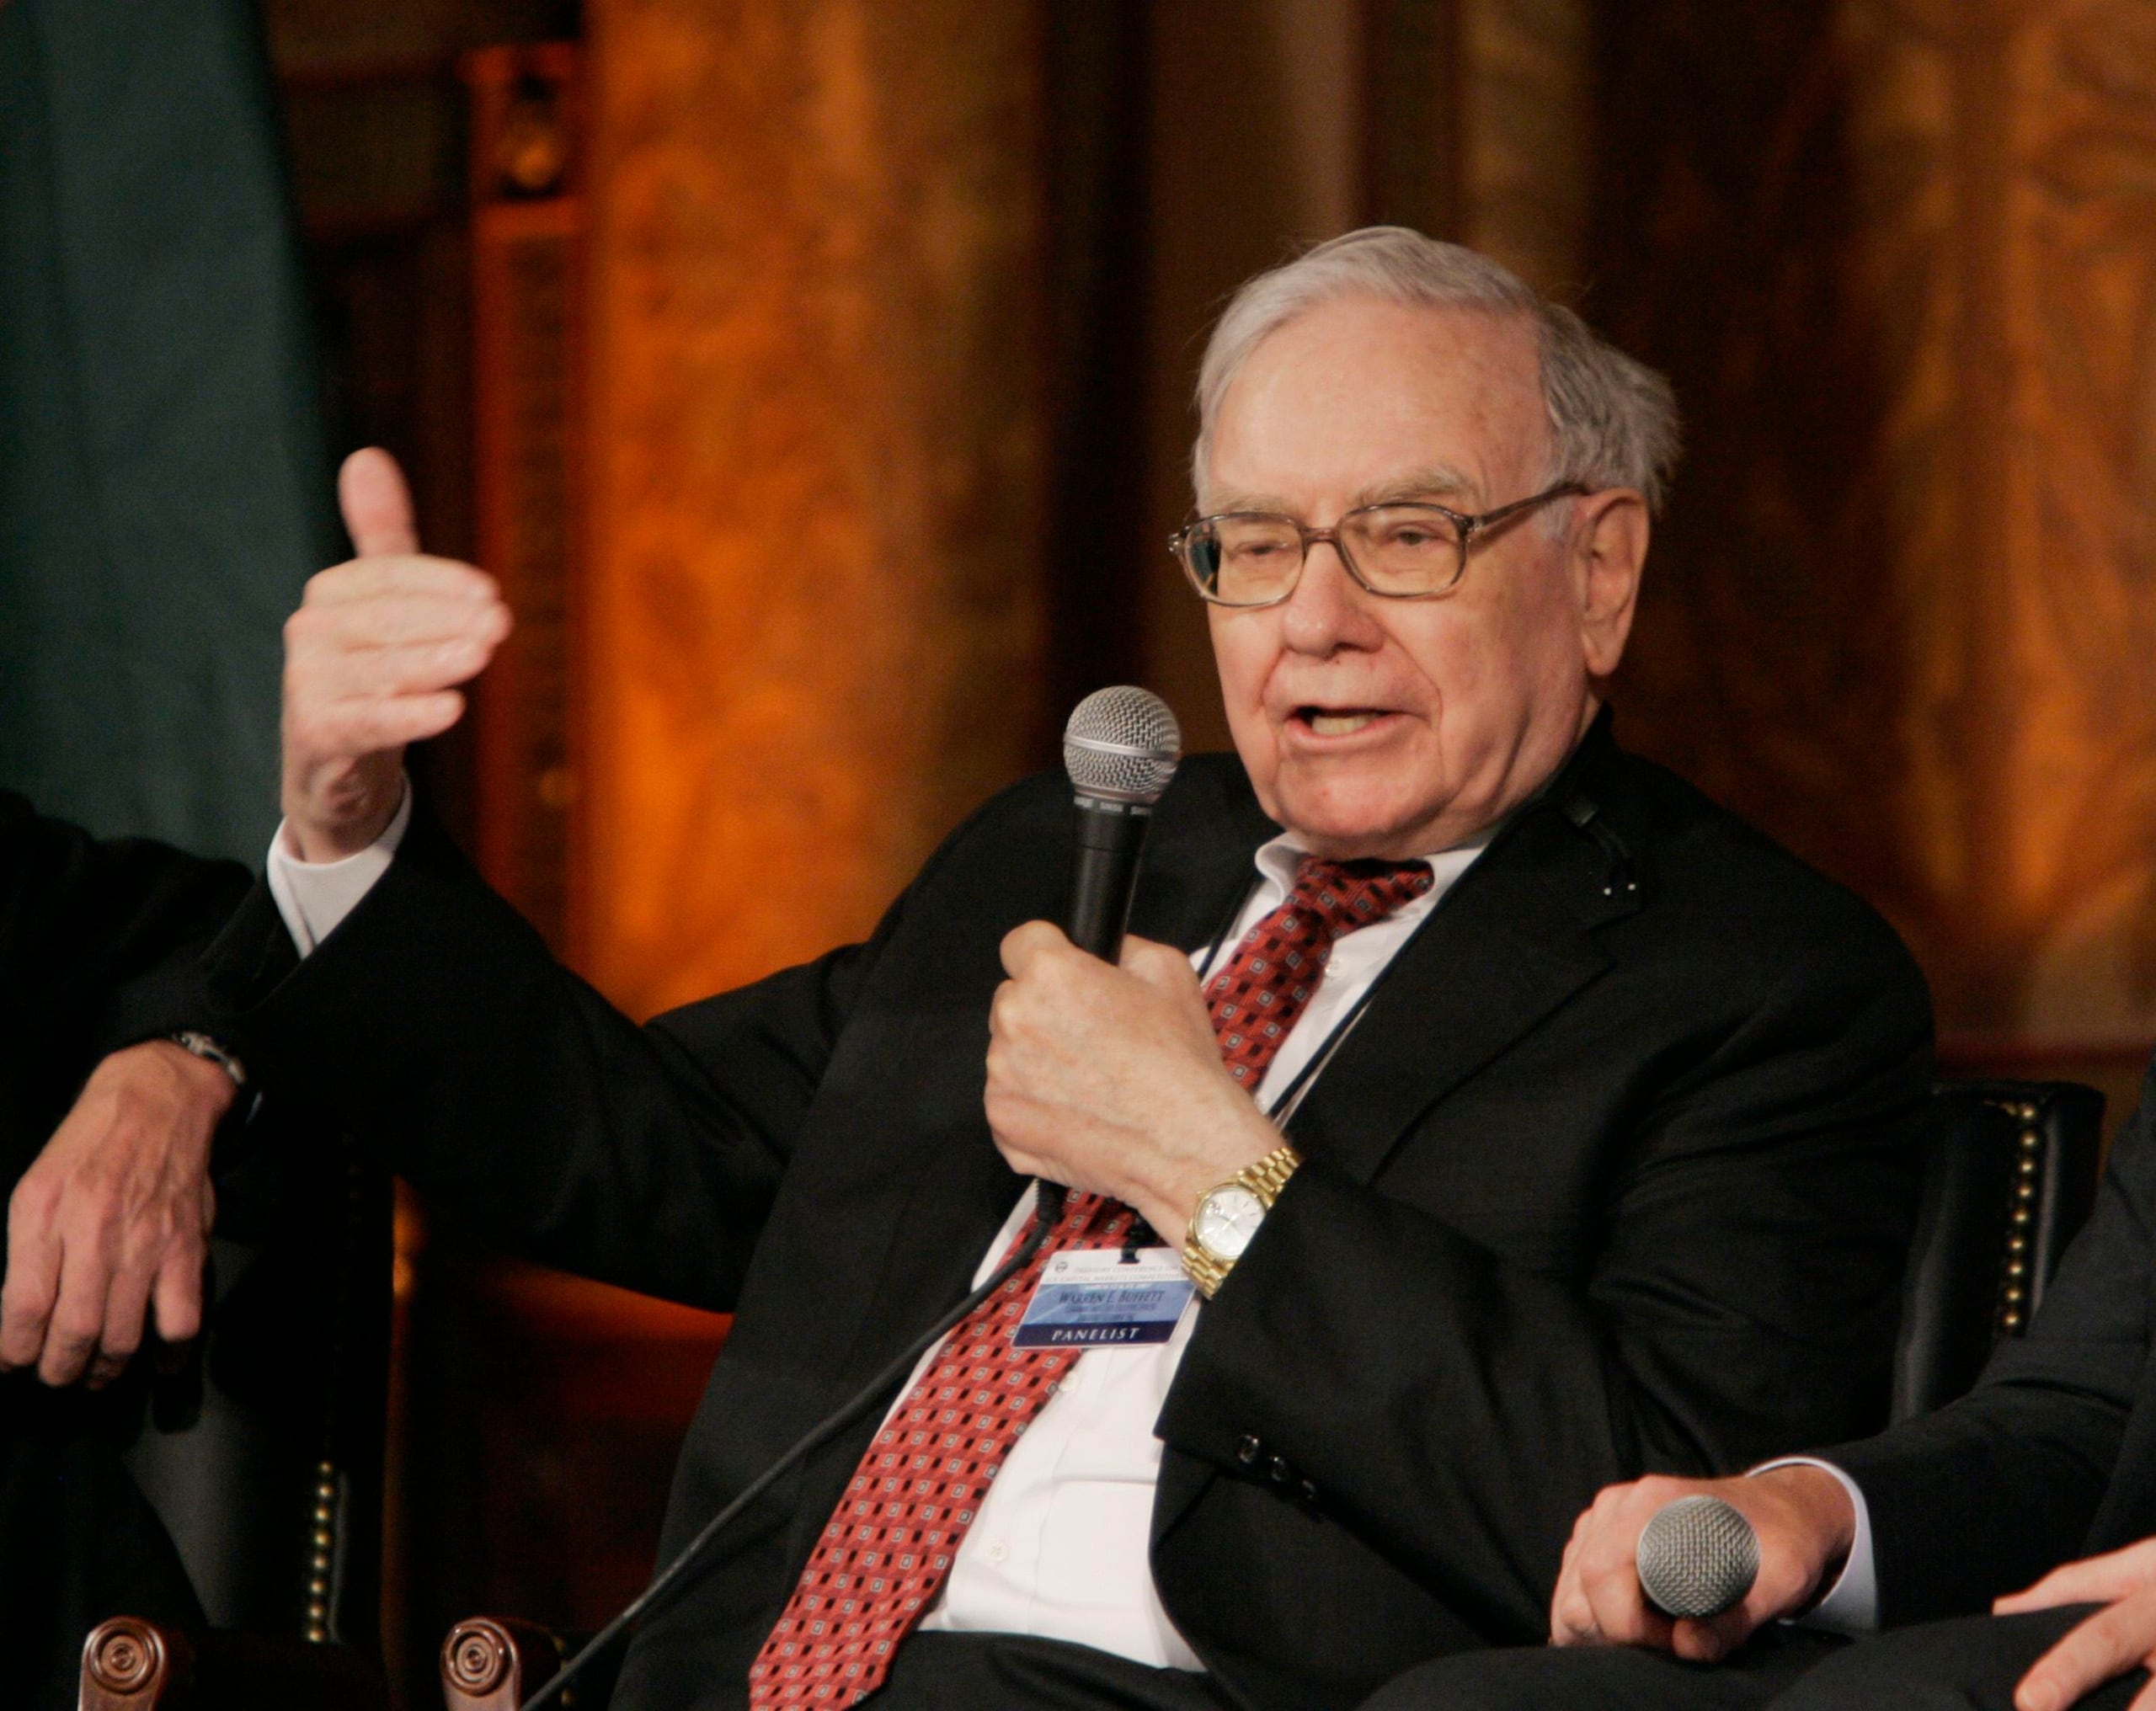 Conocido como el “Oráulo de Omaha”, Warren Buffet es uno de los inversores más exitosos del mundo. Devenga un tesoro de $83.1 billón. Dirige Berkshire Hathaway, que posee más de 60 compañías como Geico, Duracell y Dairy Queen. (Archivo)